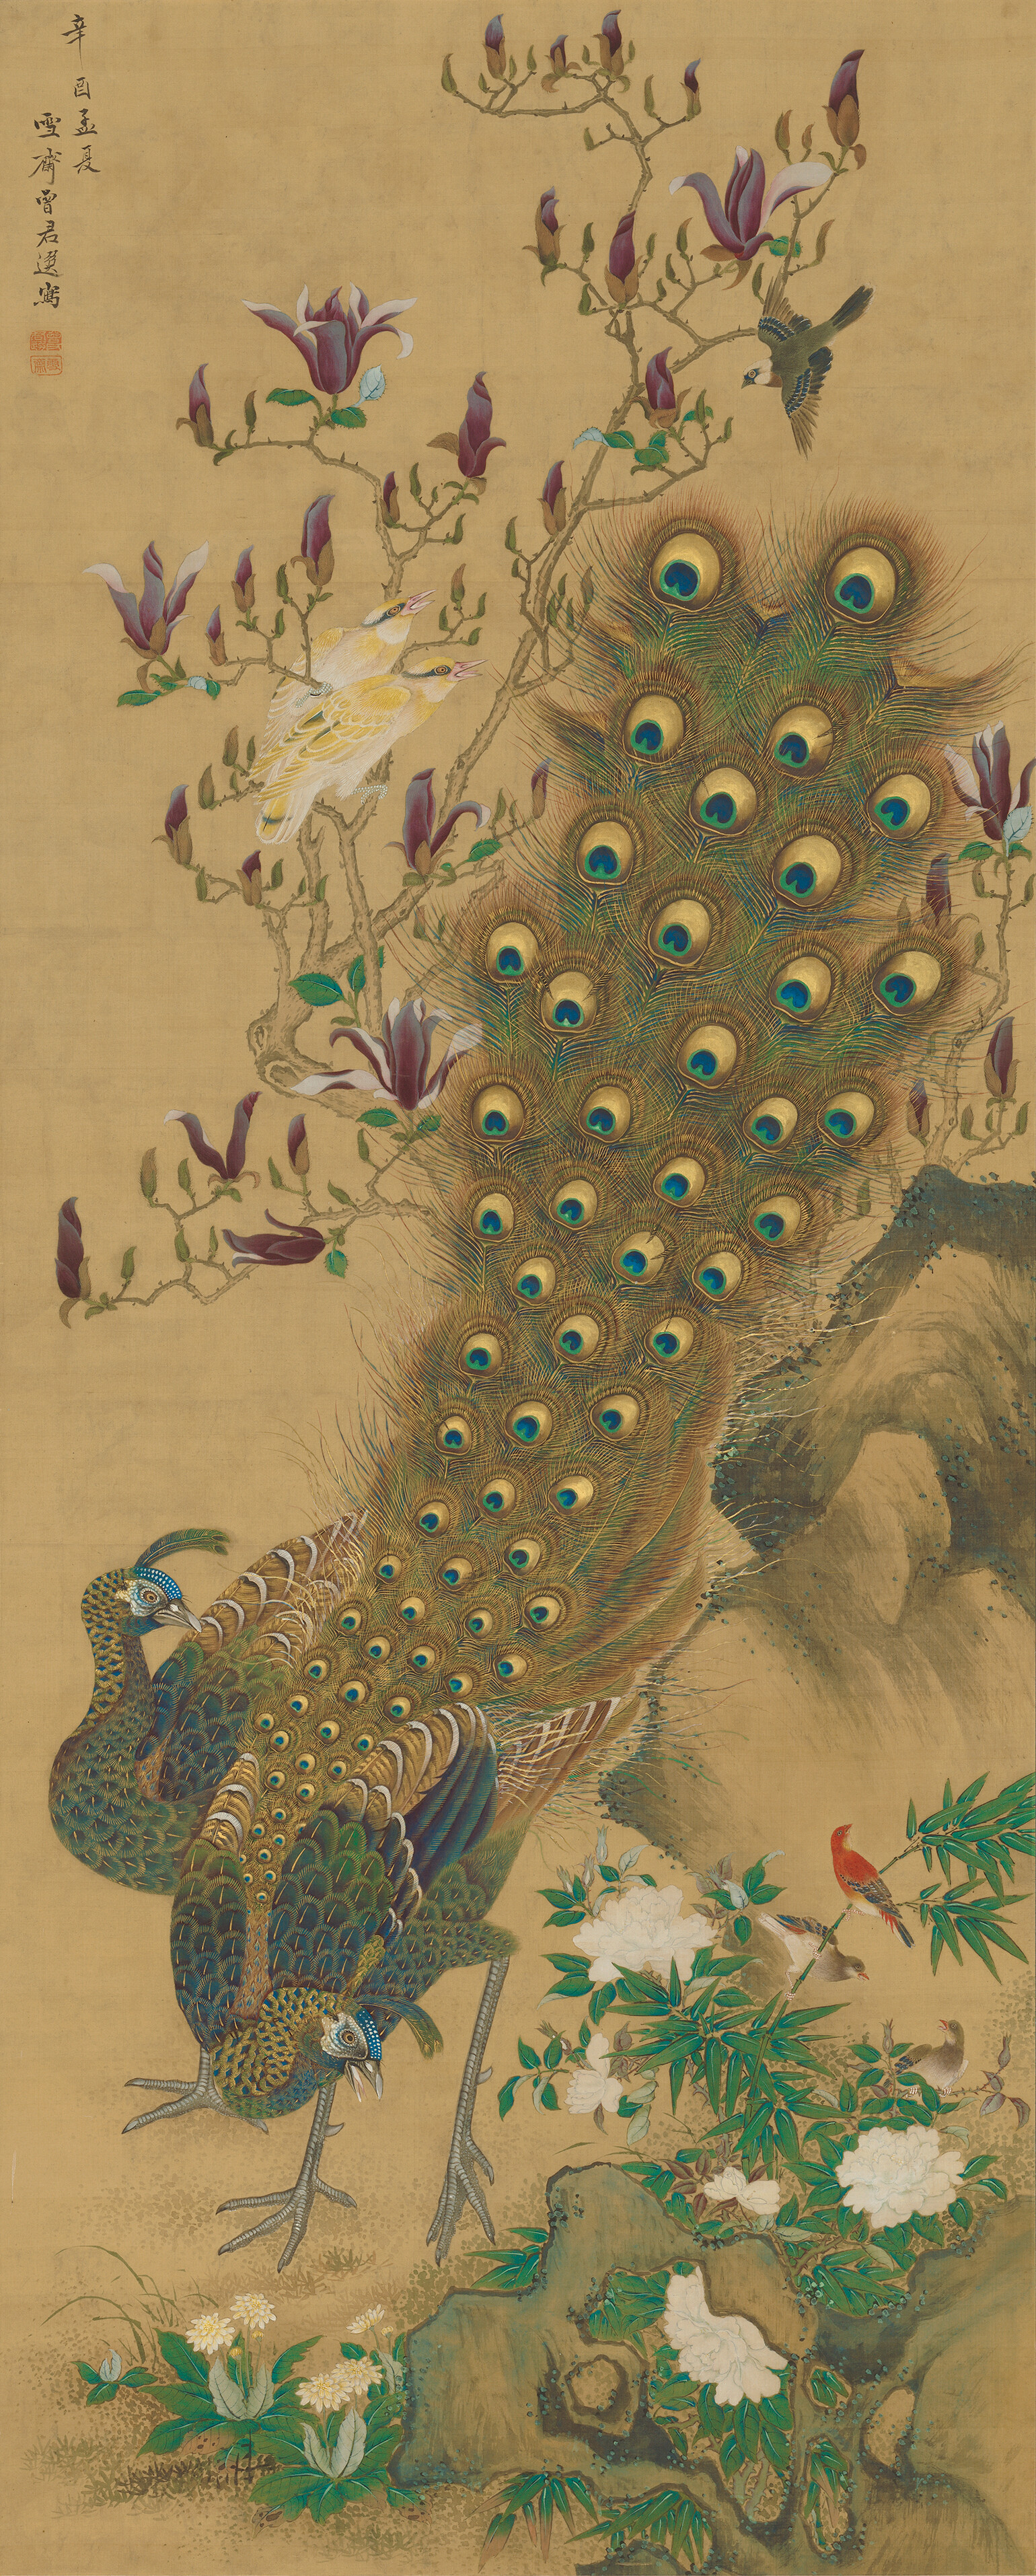 増山雪斎 《孔雀図》（右幅） 江戸時代、享和元年（1801）